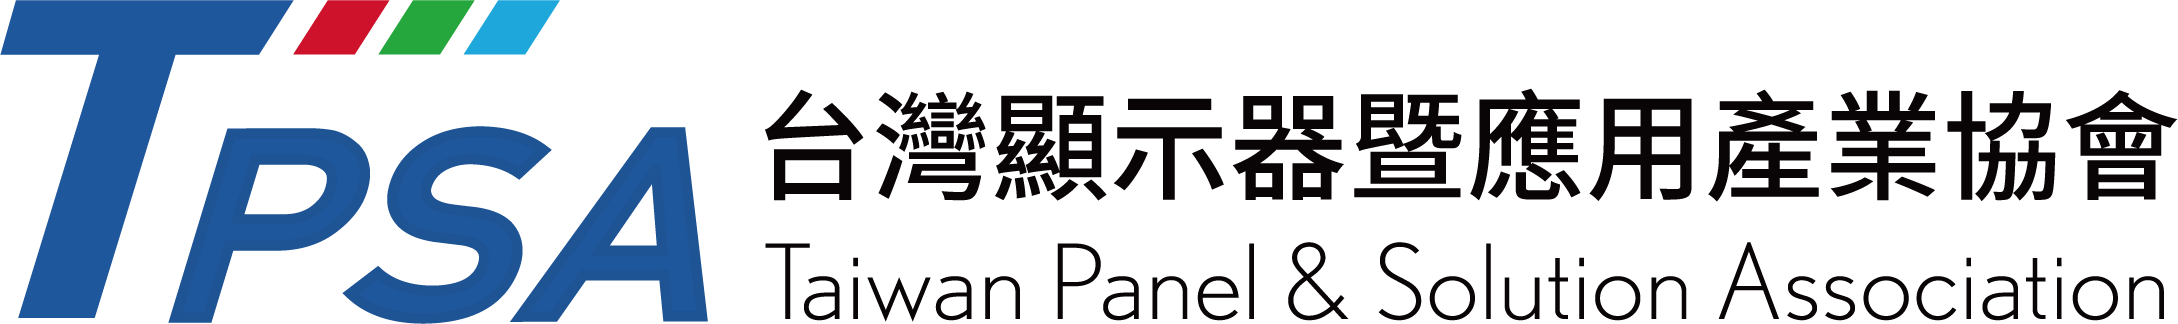 台灣顯示器材料與元件產業協會